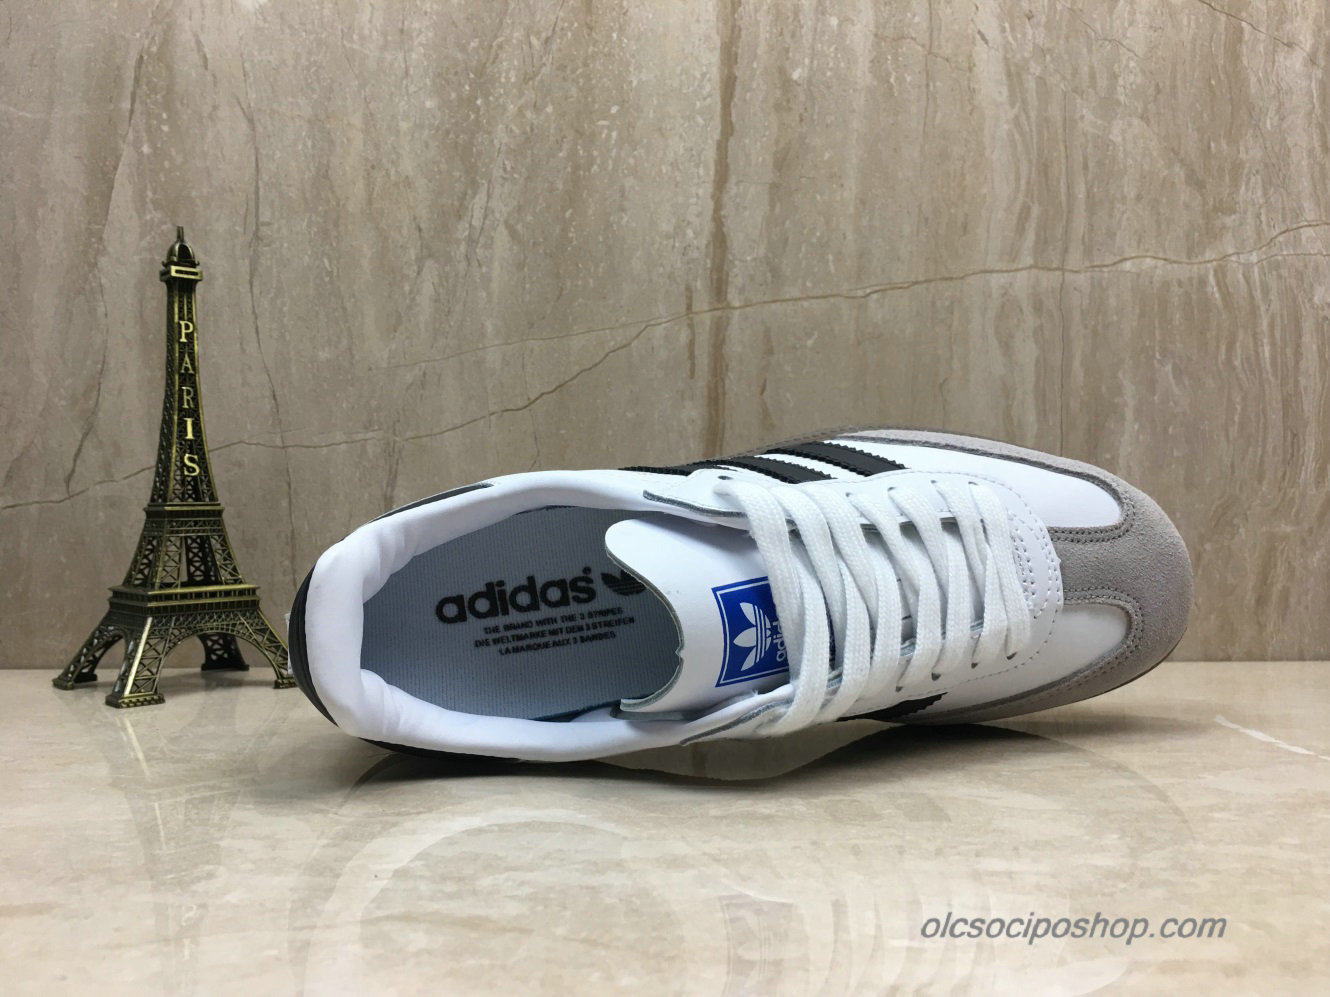 Adidas Samba OG Fehér/Fekete/Szürke Cipők (B75806) - Kattintásra bezárul